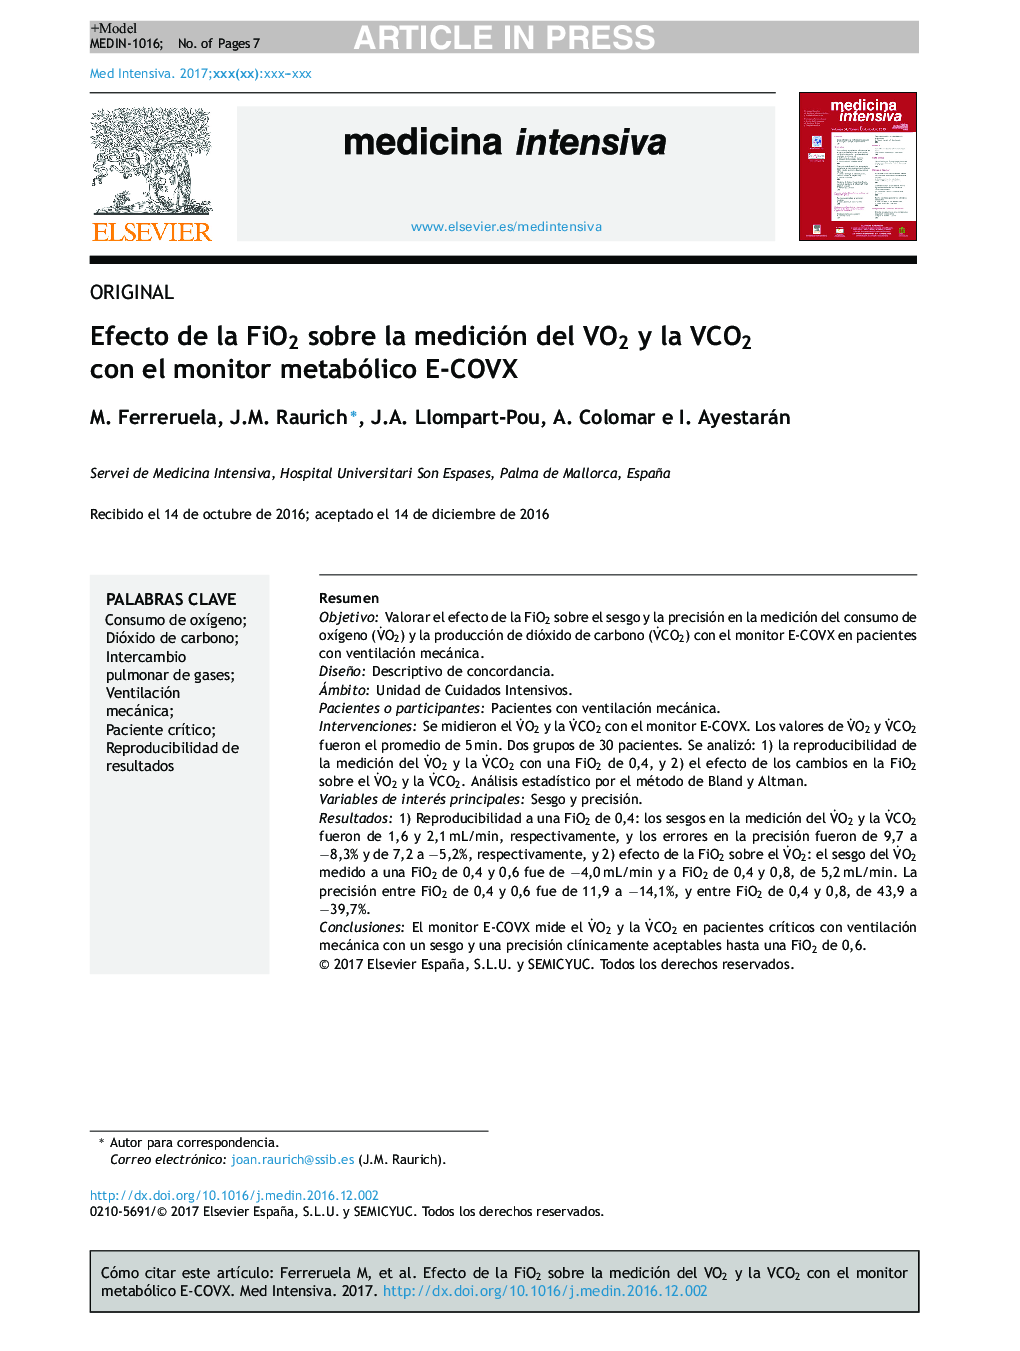 Efecto de la FiO2 sobre la medición del VO2 y la VCO2 con el monitor metabólico E-COVX